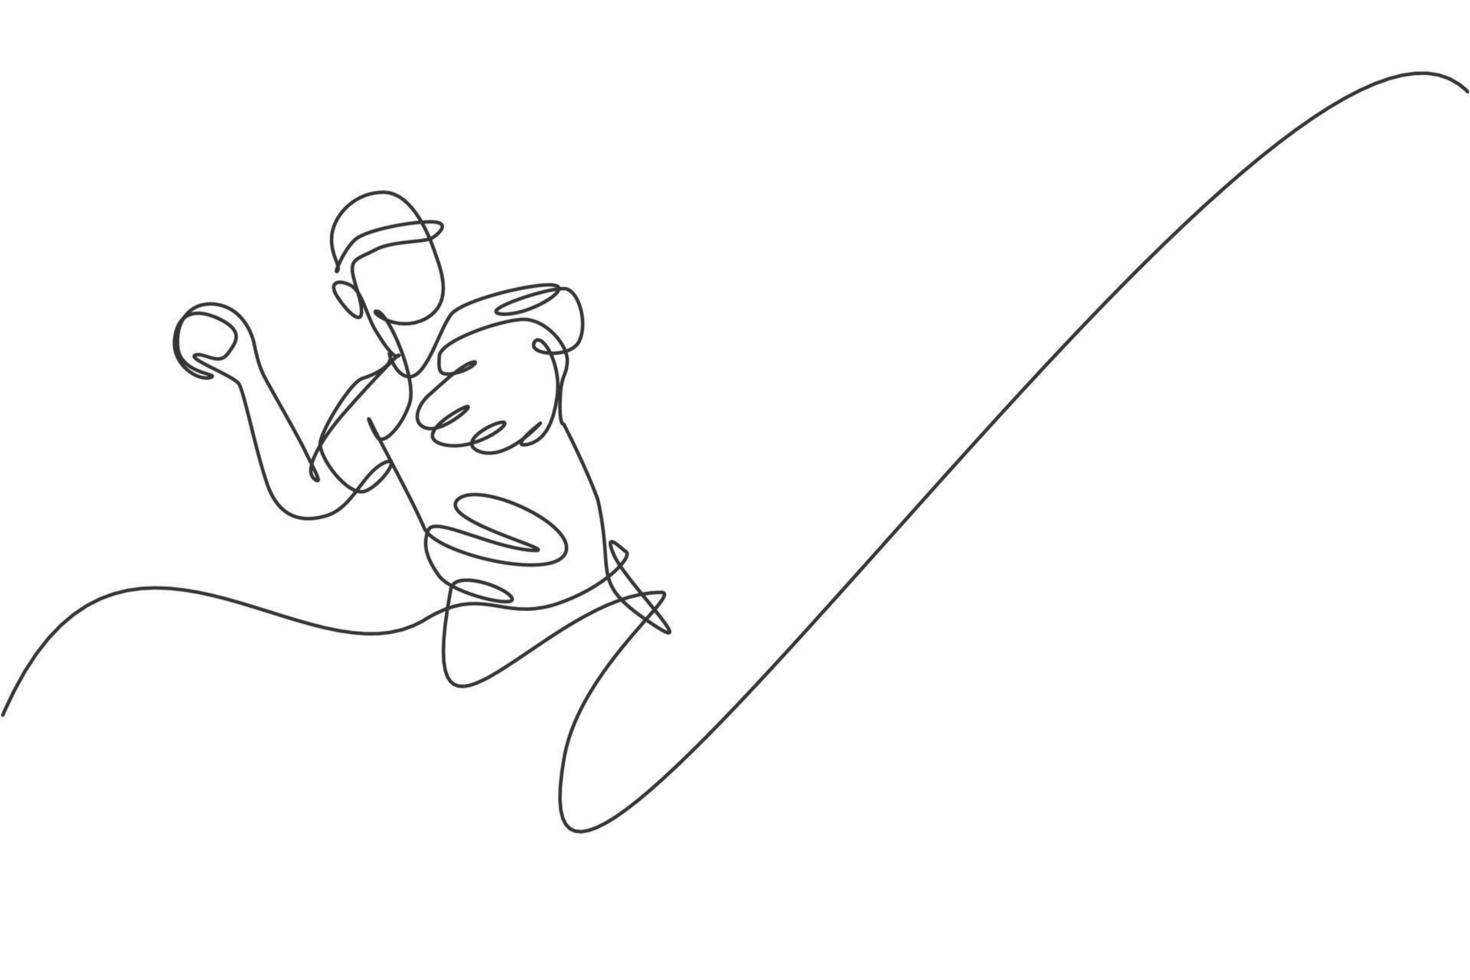 un jugador de béisbol joven enérgico de dibujo de una sola línea lanza la ilustración de vector gráfico de bola de velocidad. concepto de entrenamiento deportivo. diseño moderno de dibujo de línea continua para la pancarta del torneo de béisbol